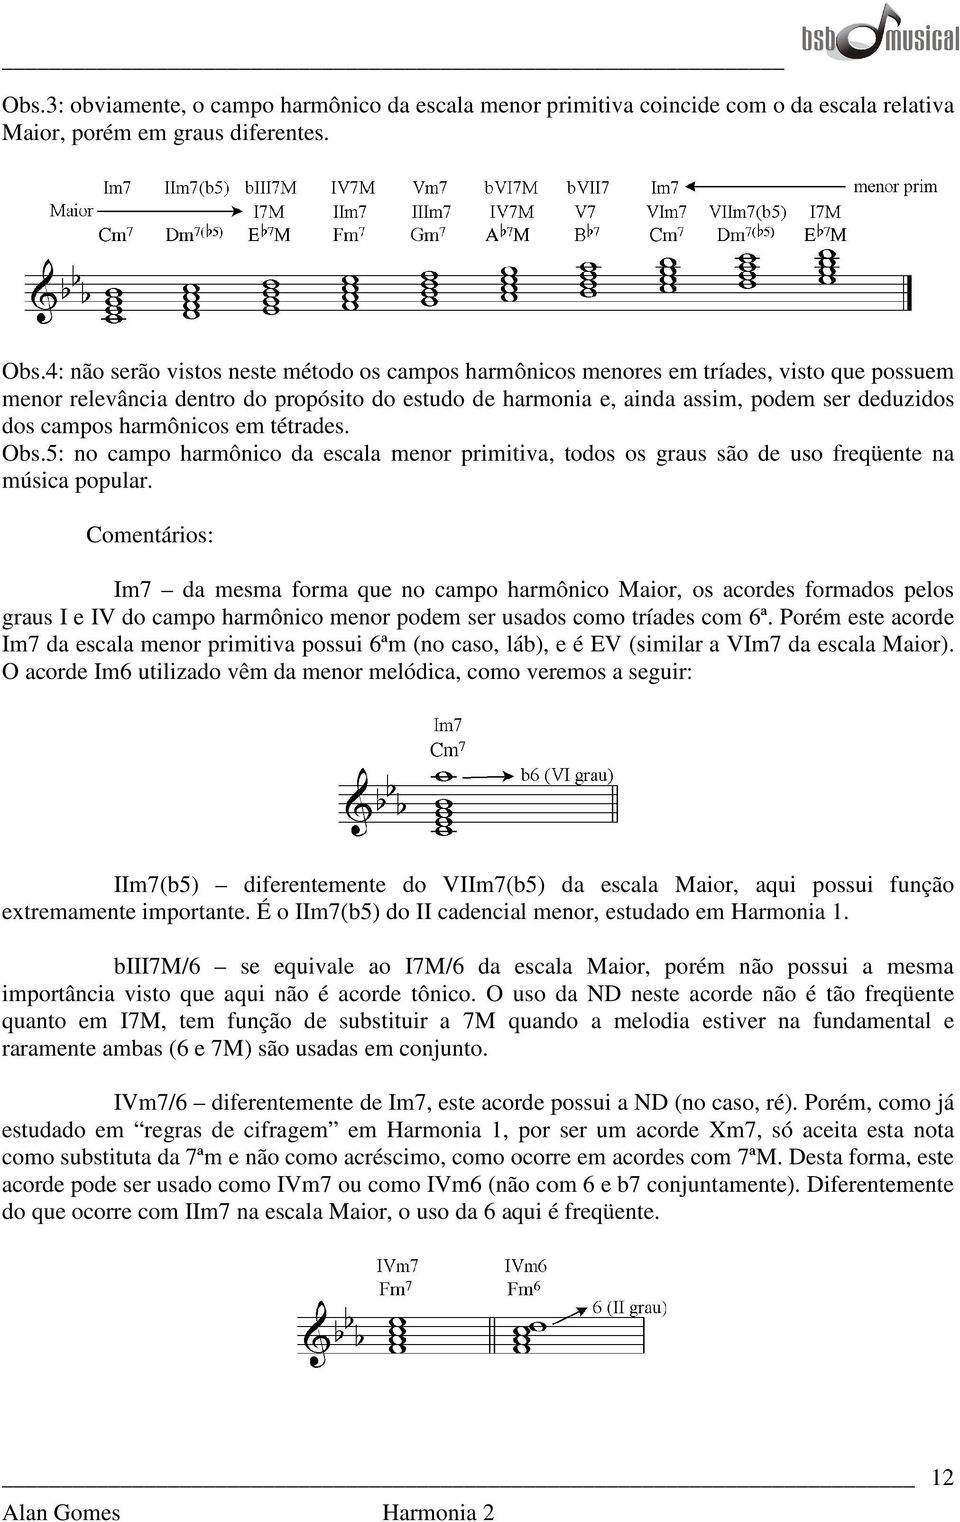 harmônicos em tétrades. Obs.5: no campo harmônico da escala menor primitiva, todos os graus são de uso freqüente na música popular.